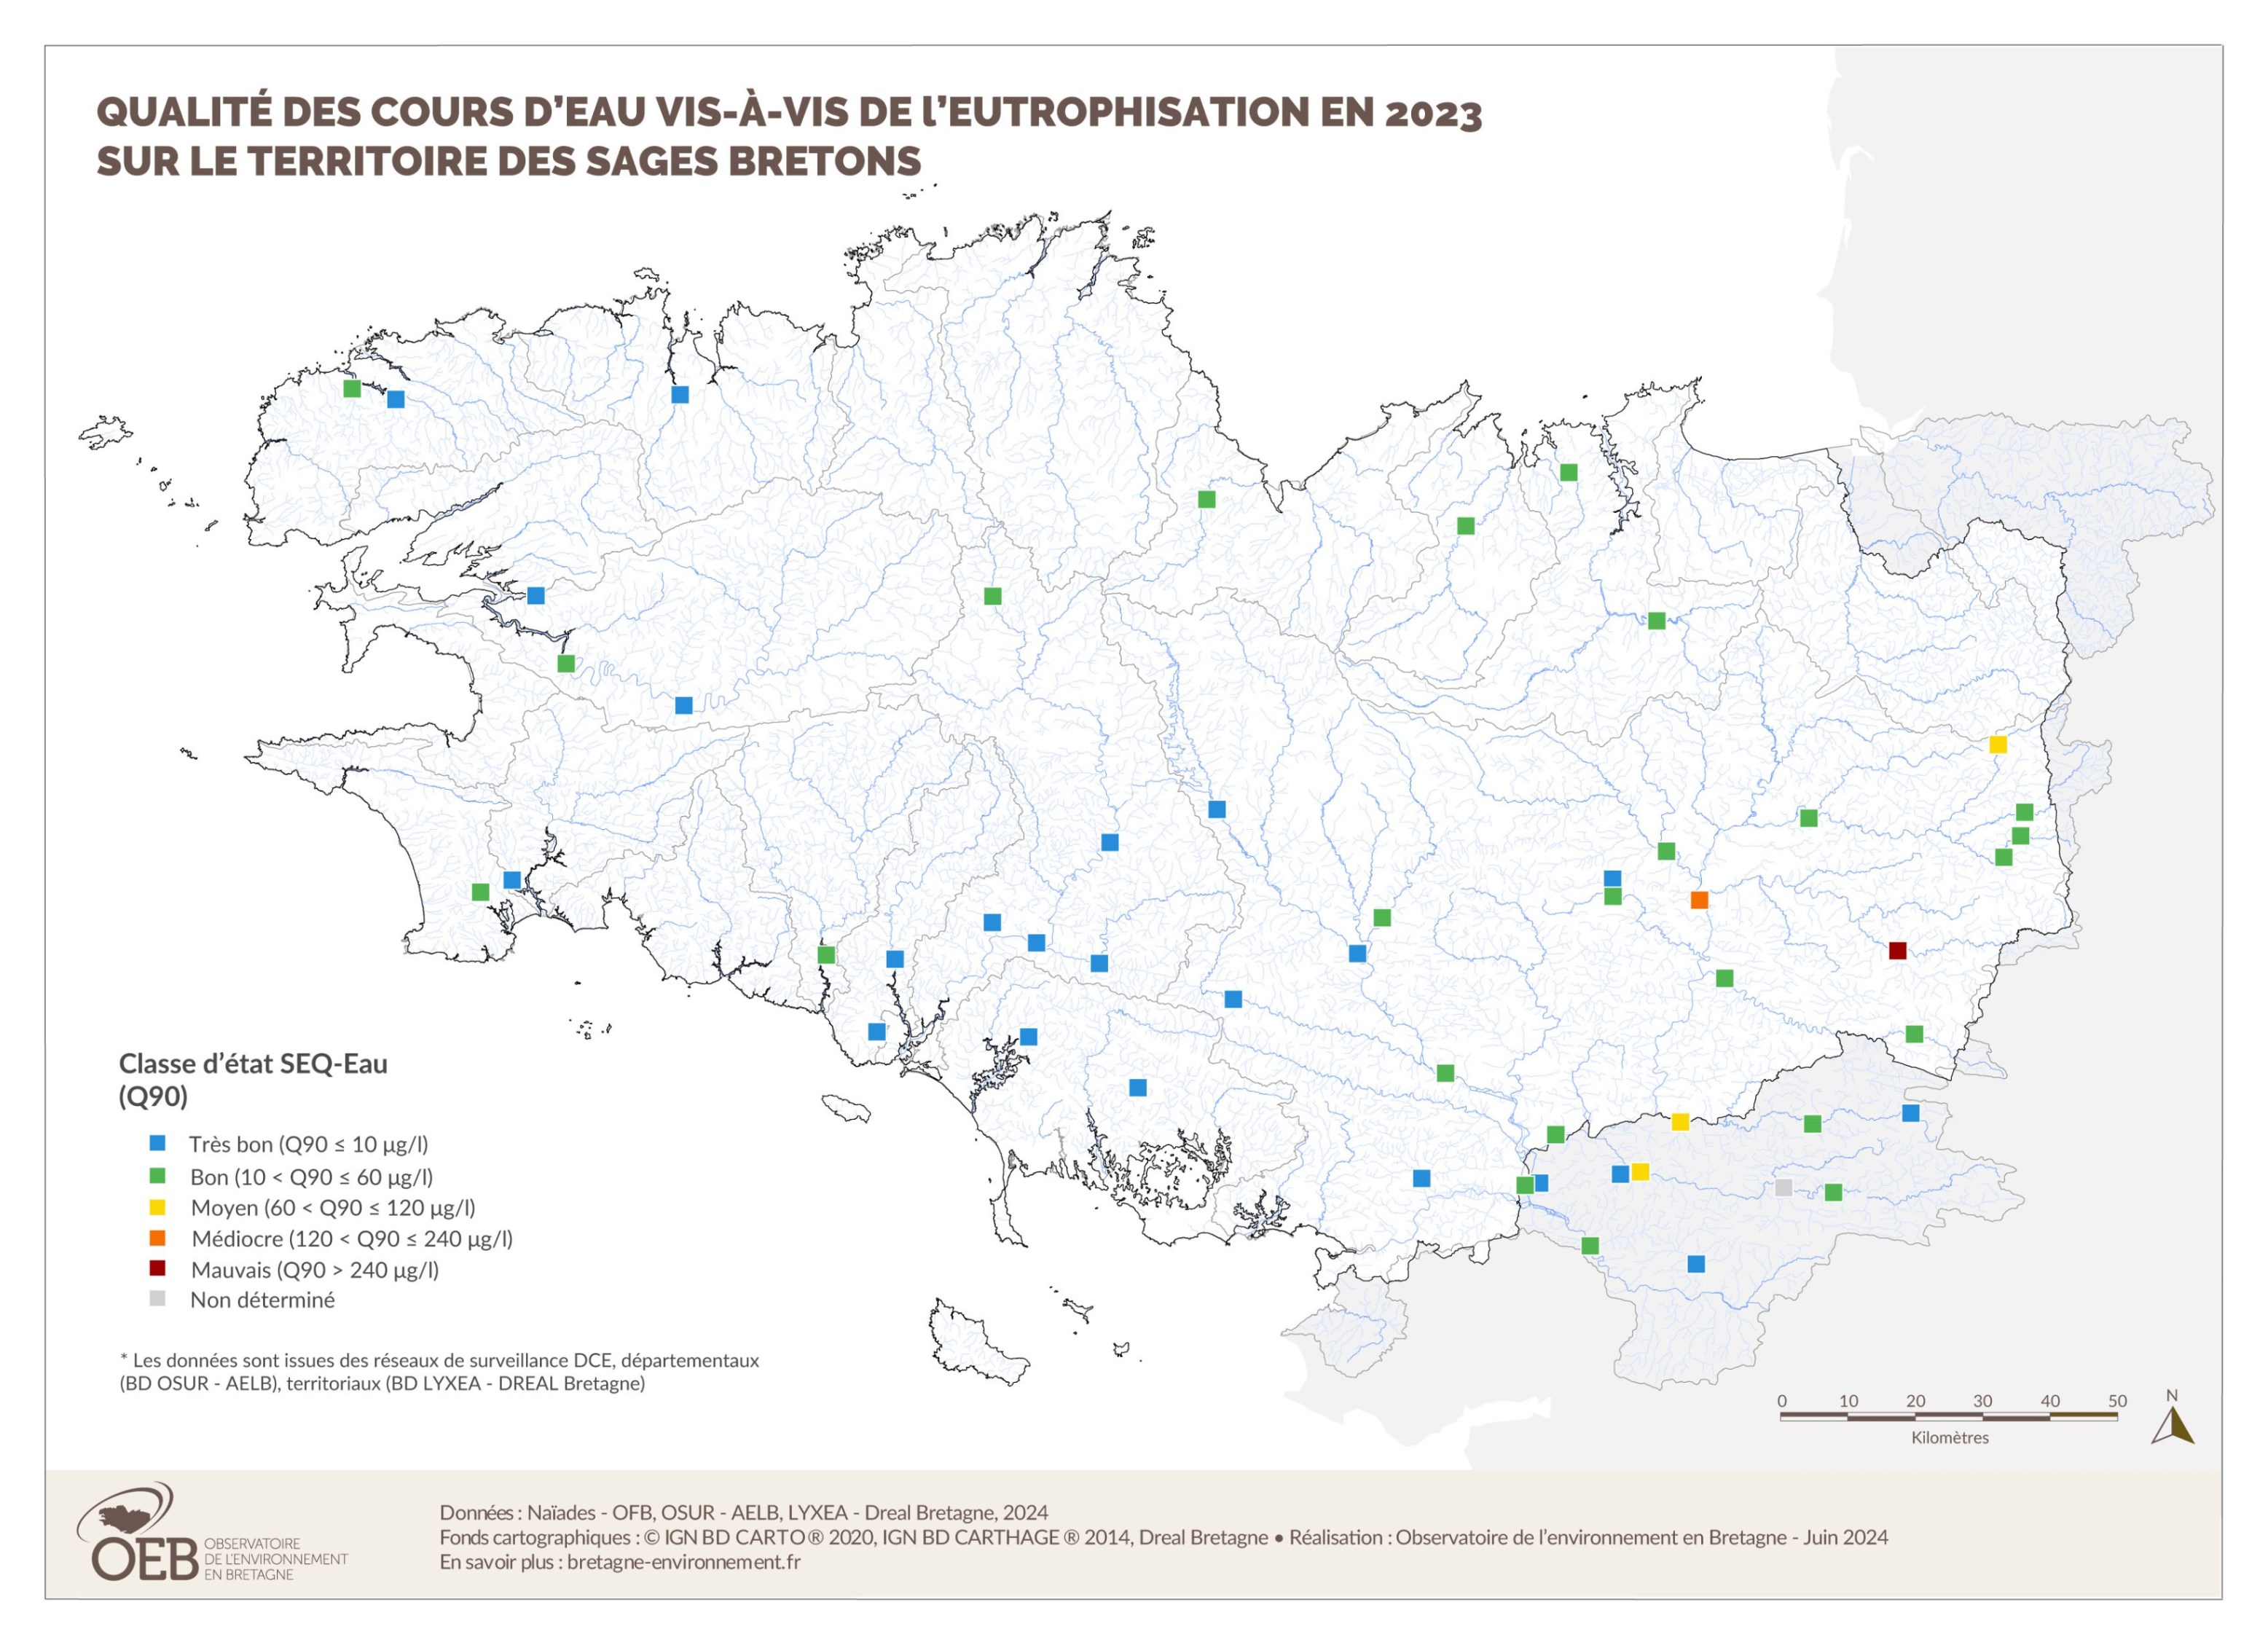 Qualité des cours d'eau vis-à-vis de l'eutrophisation en 2023 - Tous dispositifs de collecte confondus